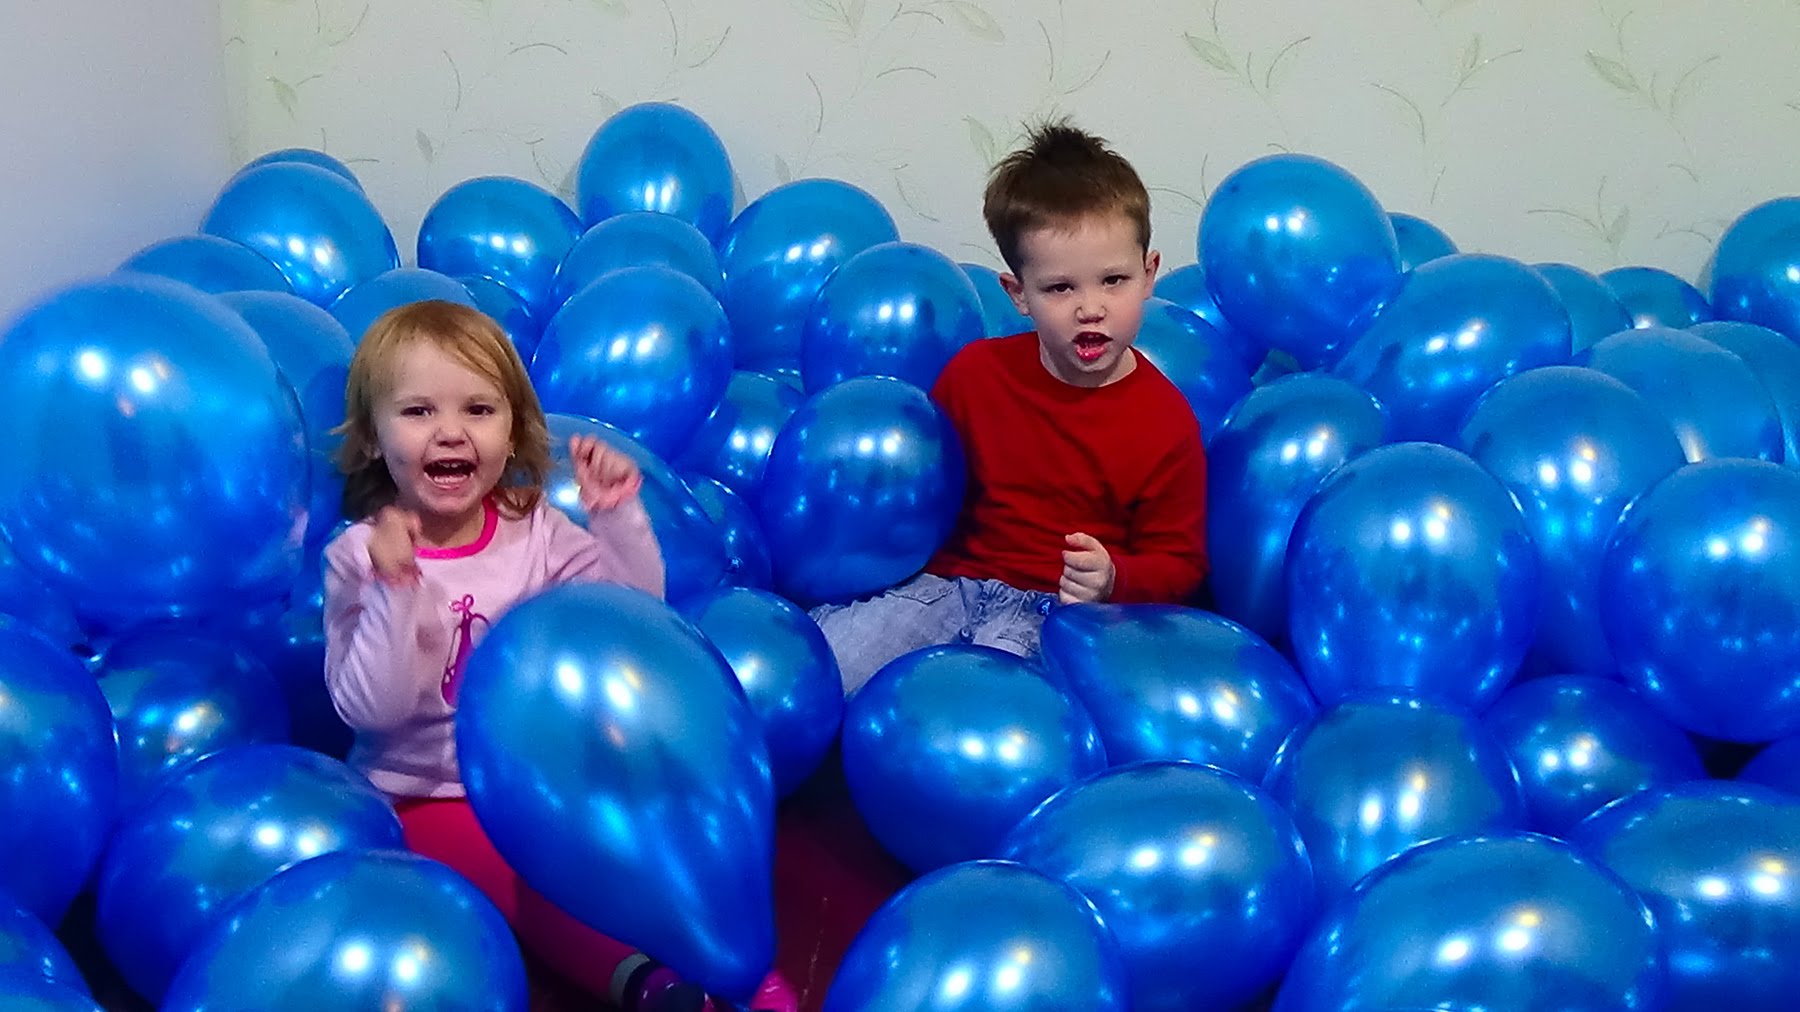 Надуть шары видео. Катя и Макс шарики. Дети с воздушными шарами. Шары для детей. Надутые воздушные шары.